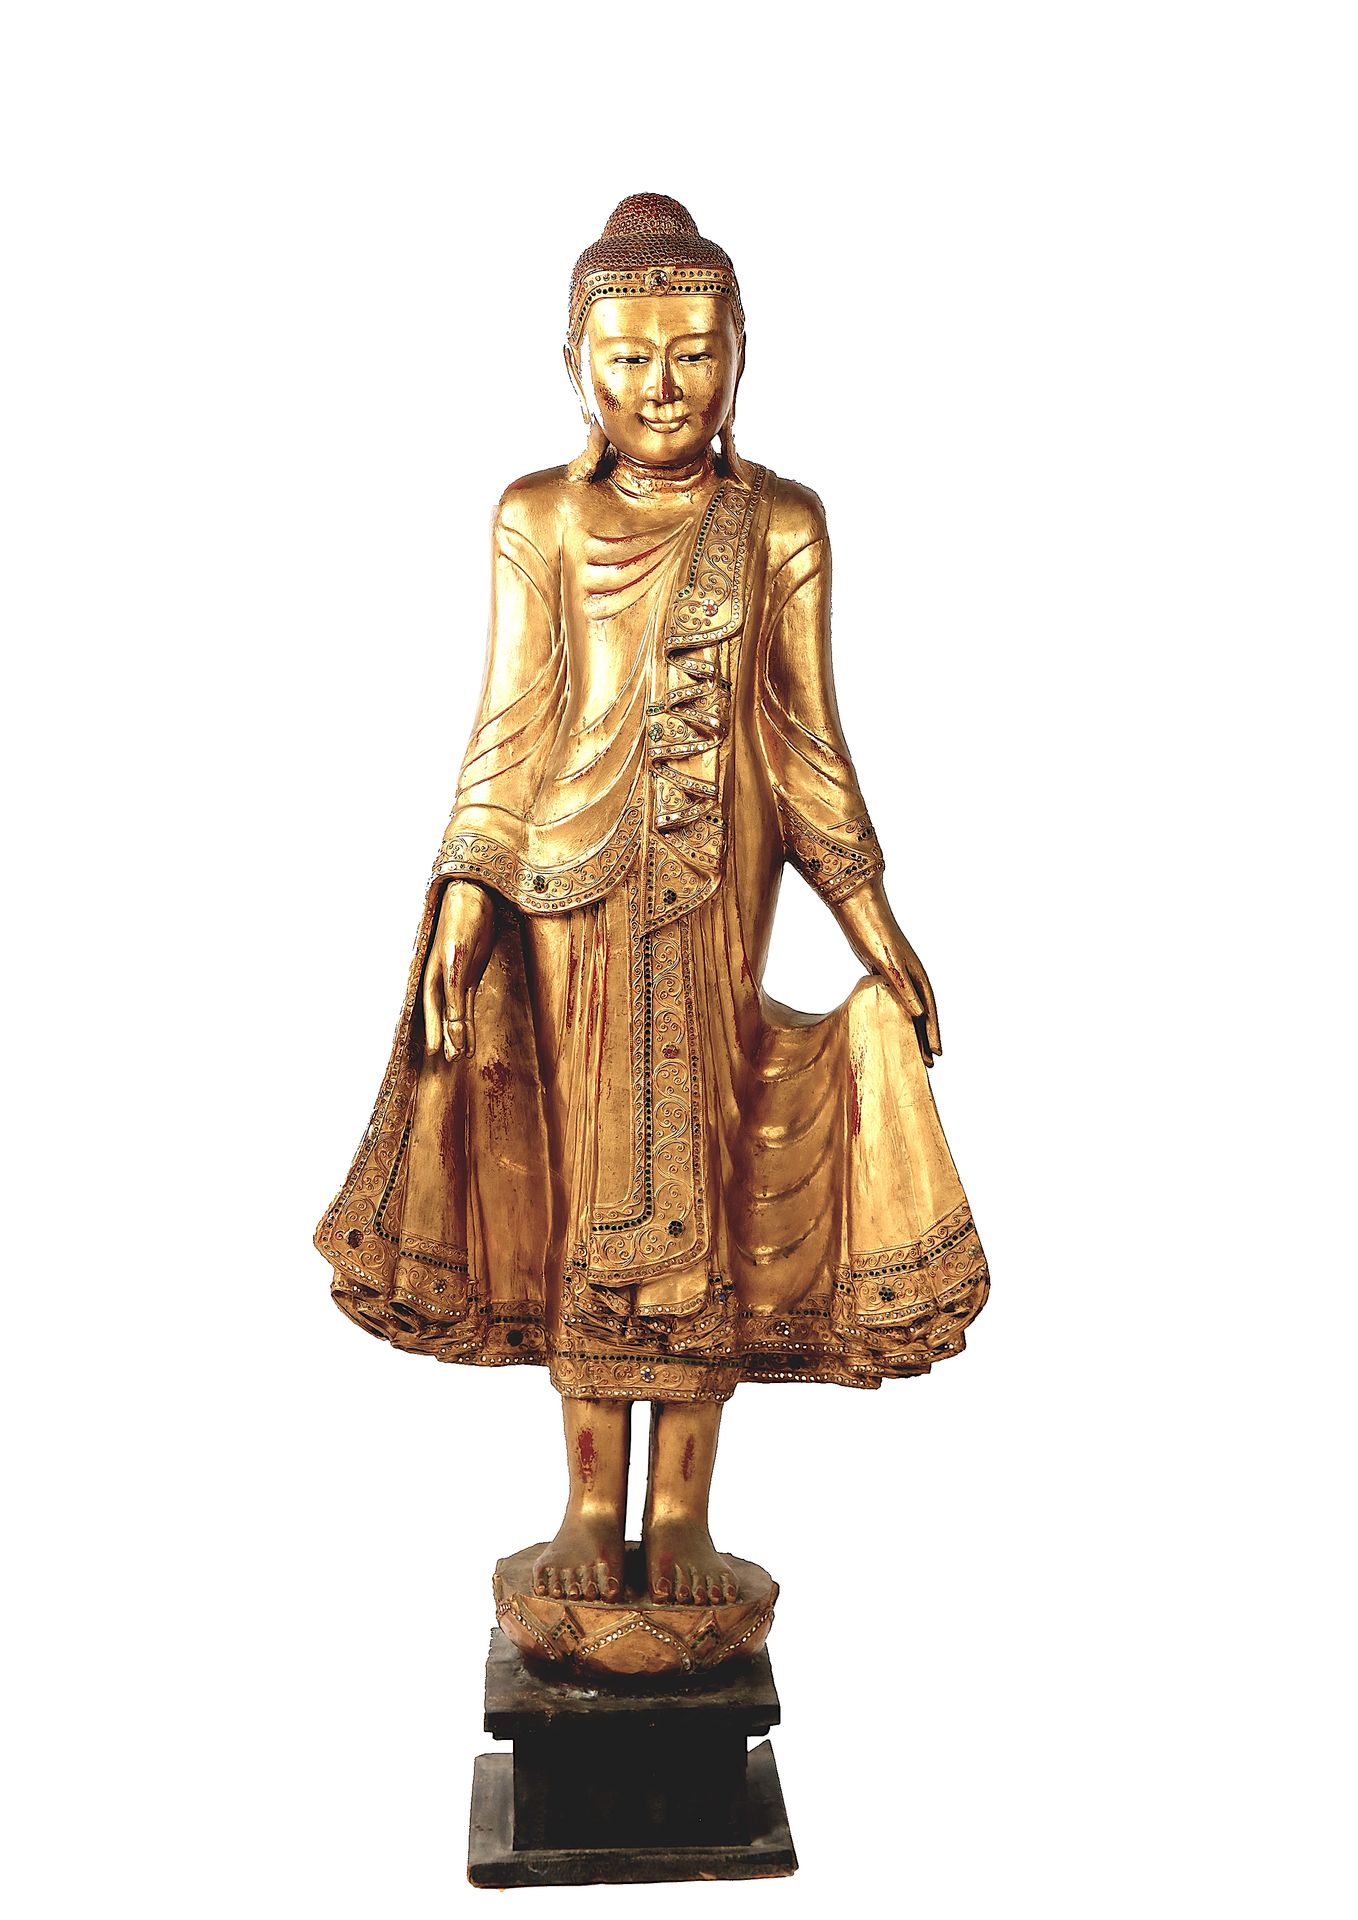 Null 
缅甸，金漆木雕佛像，
身着五彩石装饰的僧袍，头顶上有宁静的面孔 。 

颅骨突起，即乌斯尼沙，是知识的象征。十九世纪末至二十世纪初。